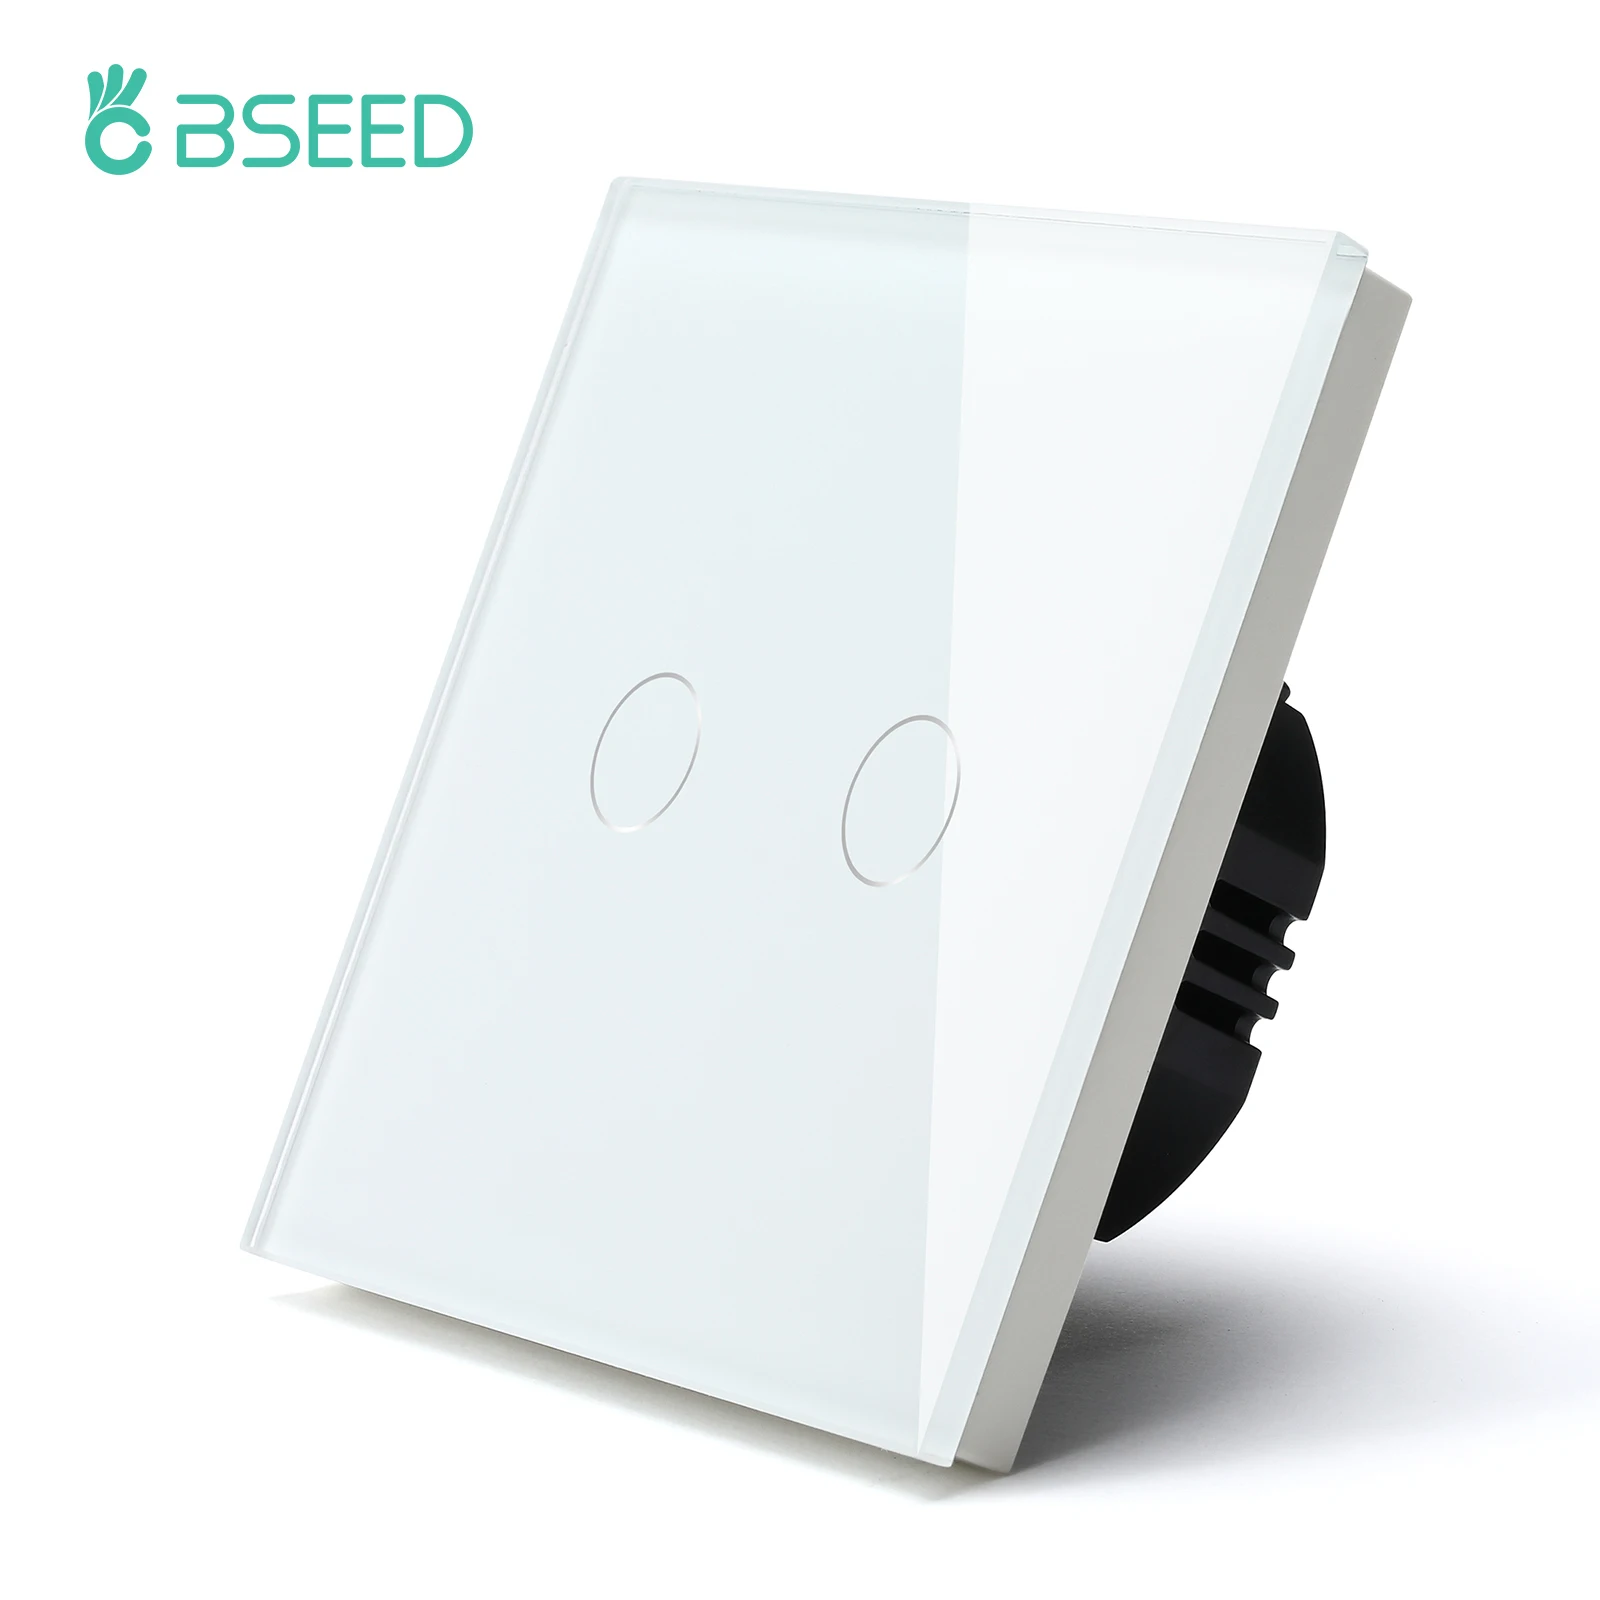 BSEED-interruptores de luz con pantalla táctil, Panel de cristal con retroiluminación LED, carga máxima de 300W, 1/2/3 entradas